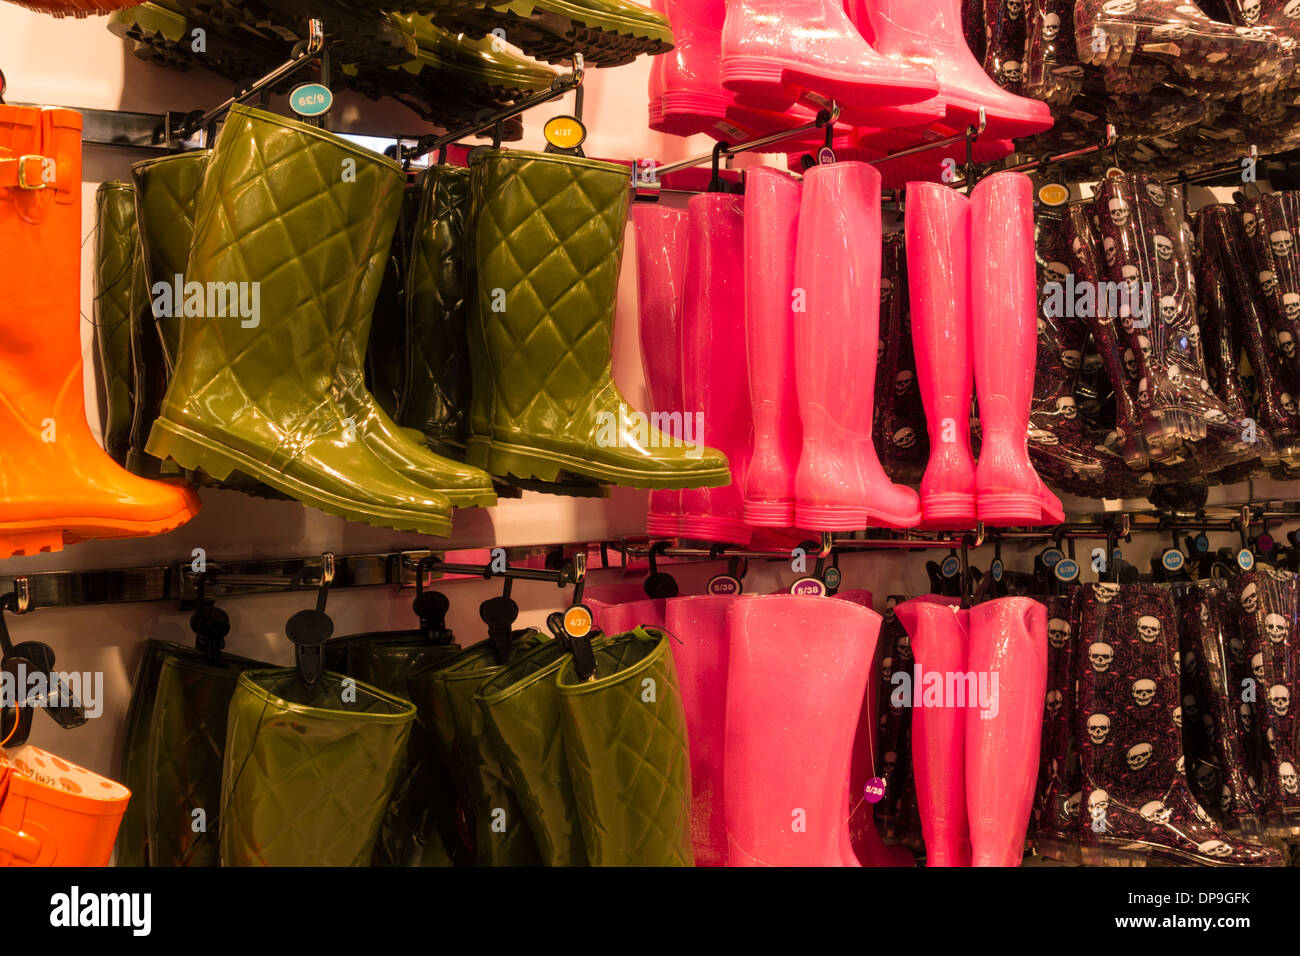 Wellingtons display in Primak store. UK Stock Photo